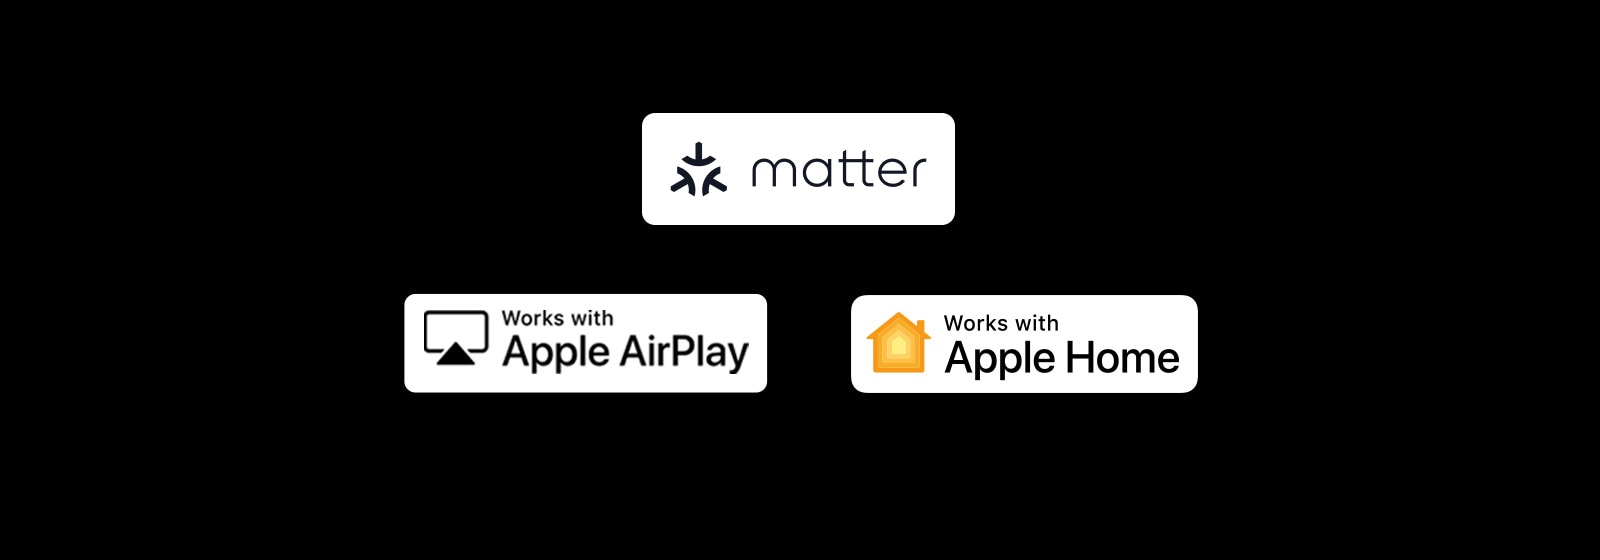 Logotipo de Apple AirPlay Logotipo de funciona con Apple Home Logotipo de funciona con Matter